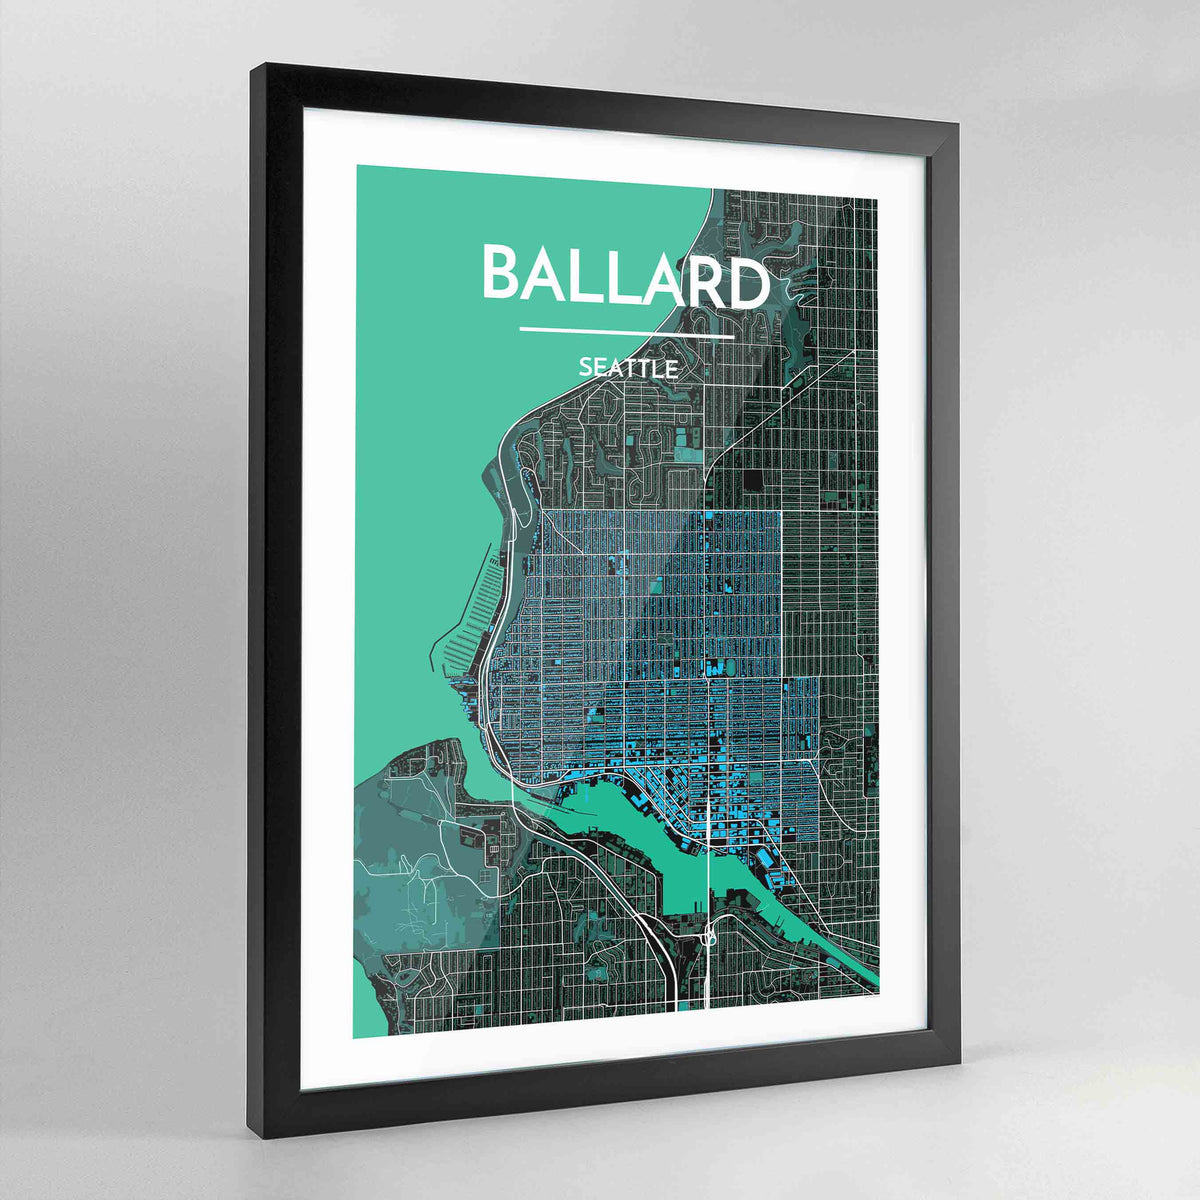 Framed Seattle Ballard Neighbourhood City Map Art Print - Point Two Design